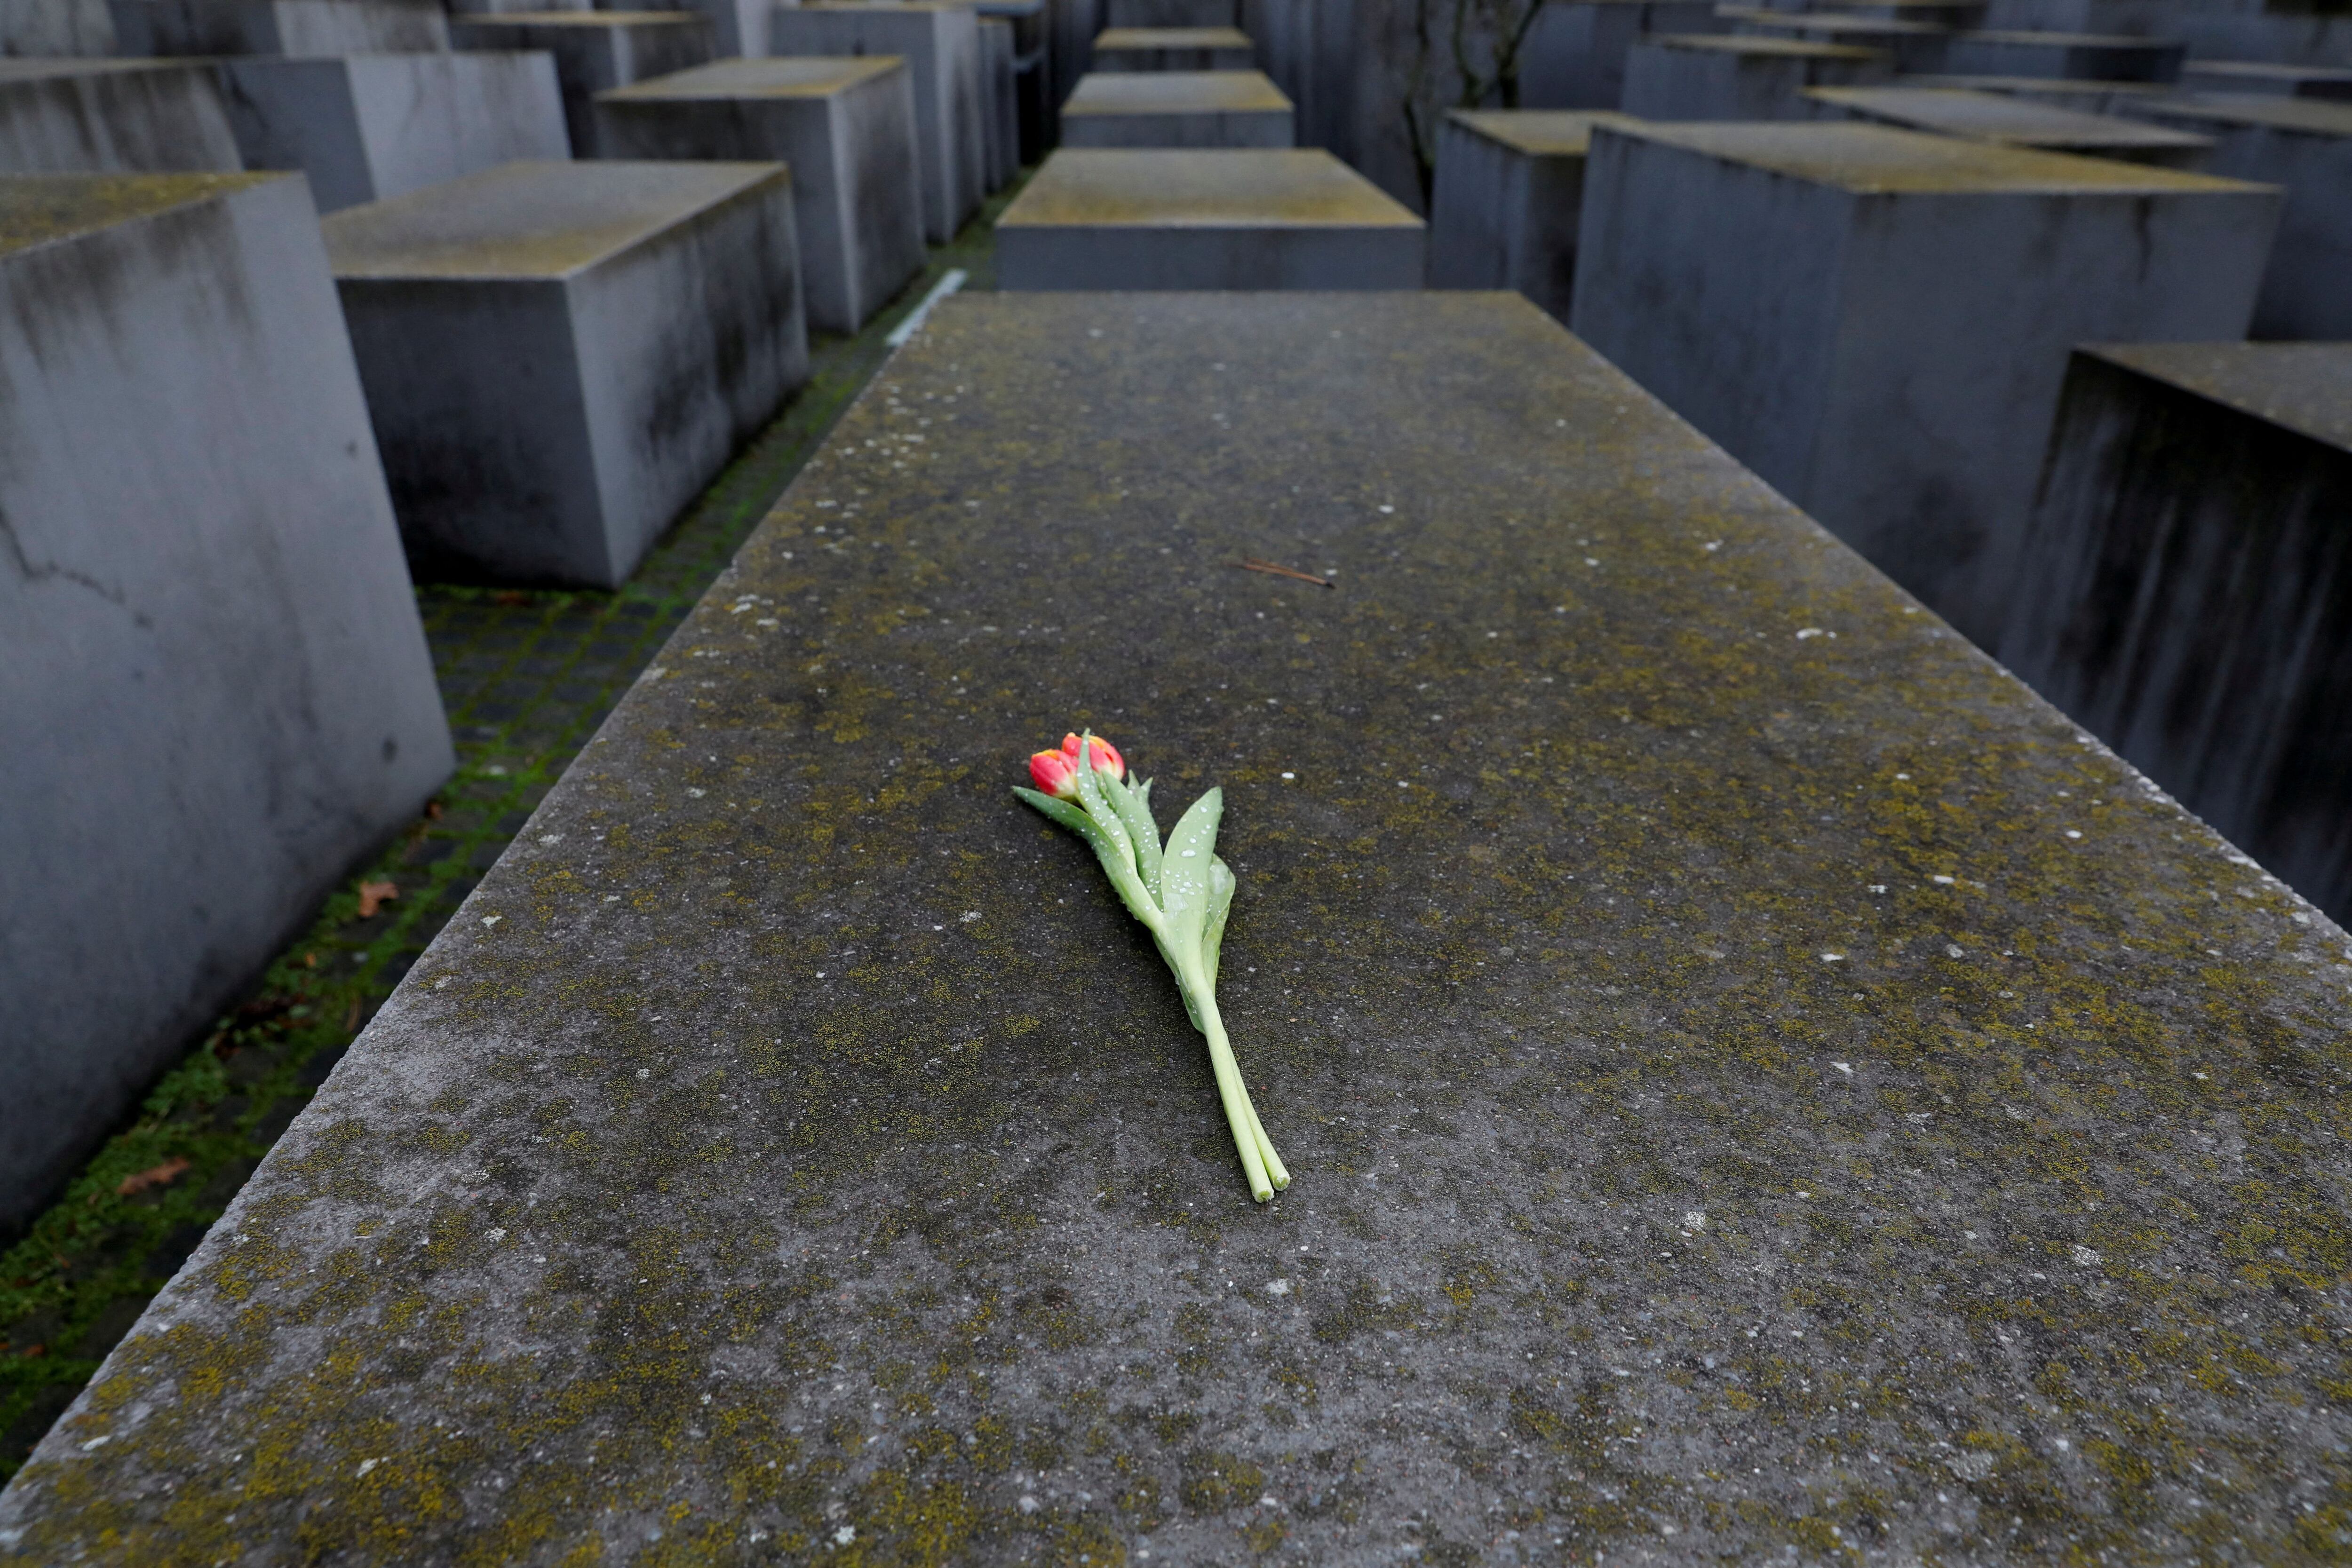 Una flor descansa sobre el monumento conmemorativo del Holocausto, en Berlín, Alemania (Reuters)